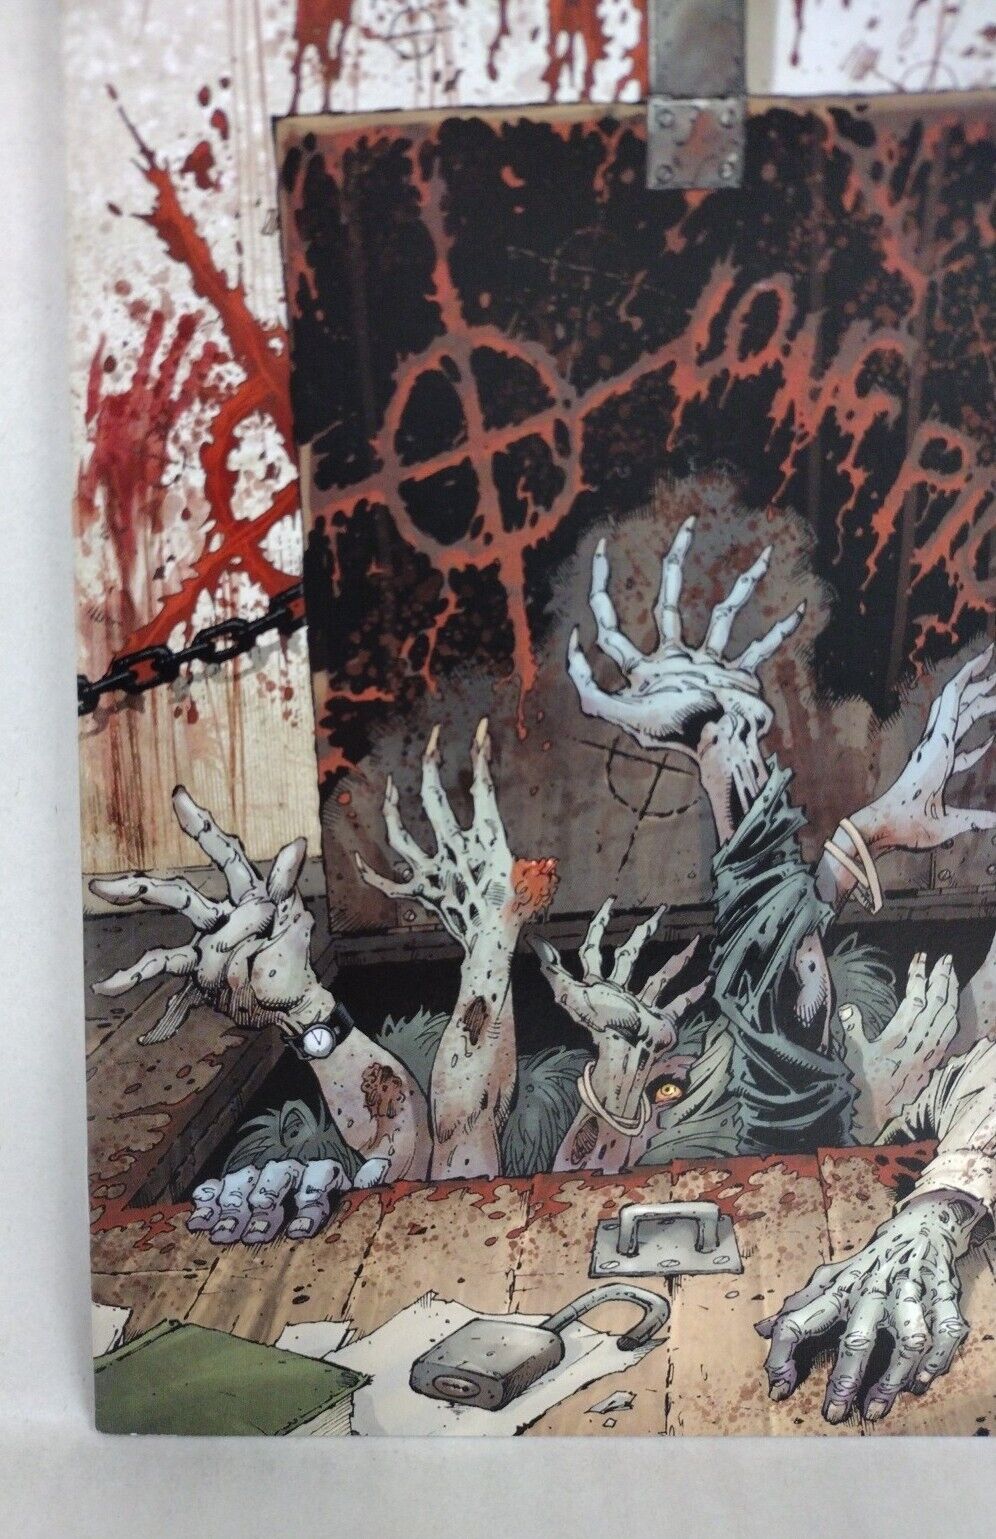 '68 One-Shots Hardship + Bad Sign #1 Image Zombie Horror Comic Lot Set VF